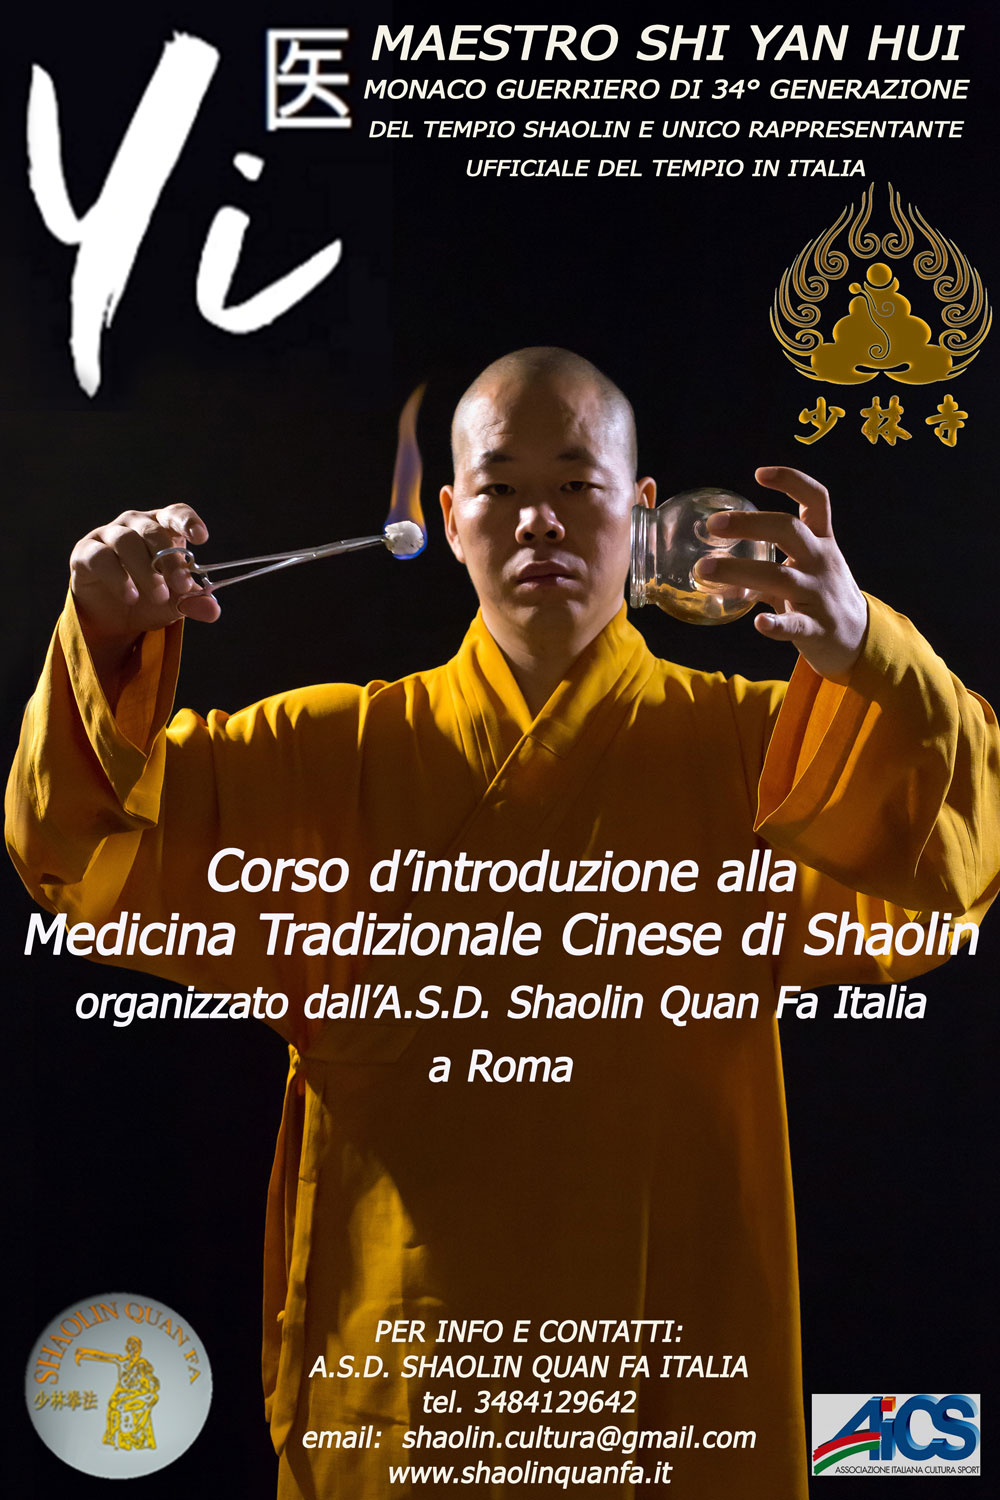 Corso d'introduzione alla Medicina Tradizionale Cinese di Shaolin a Roma